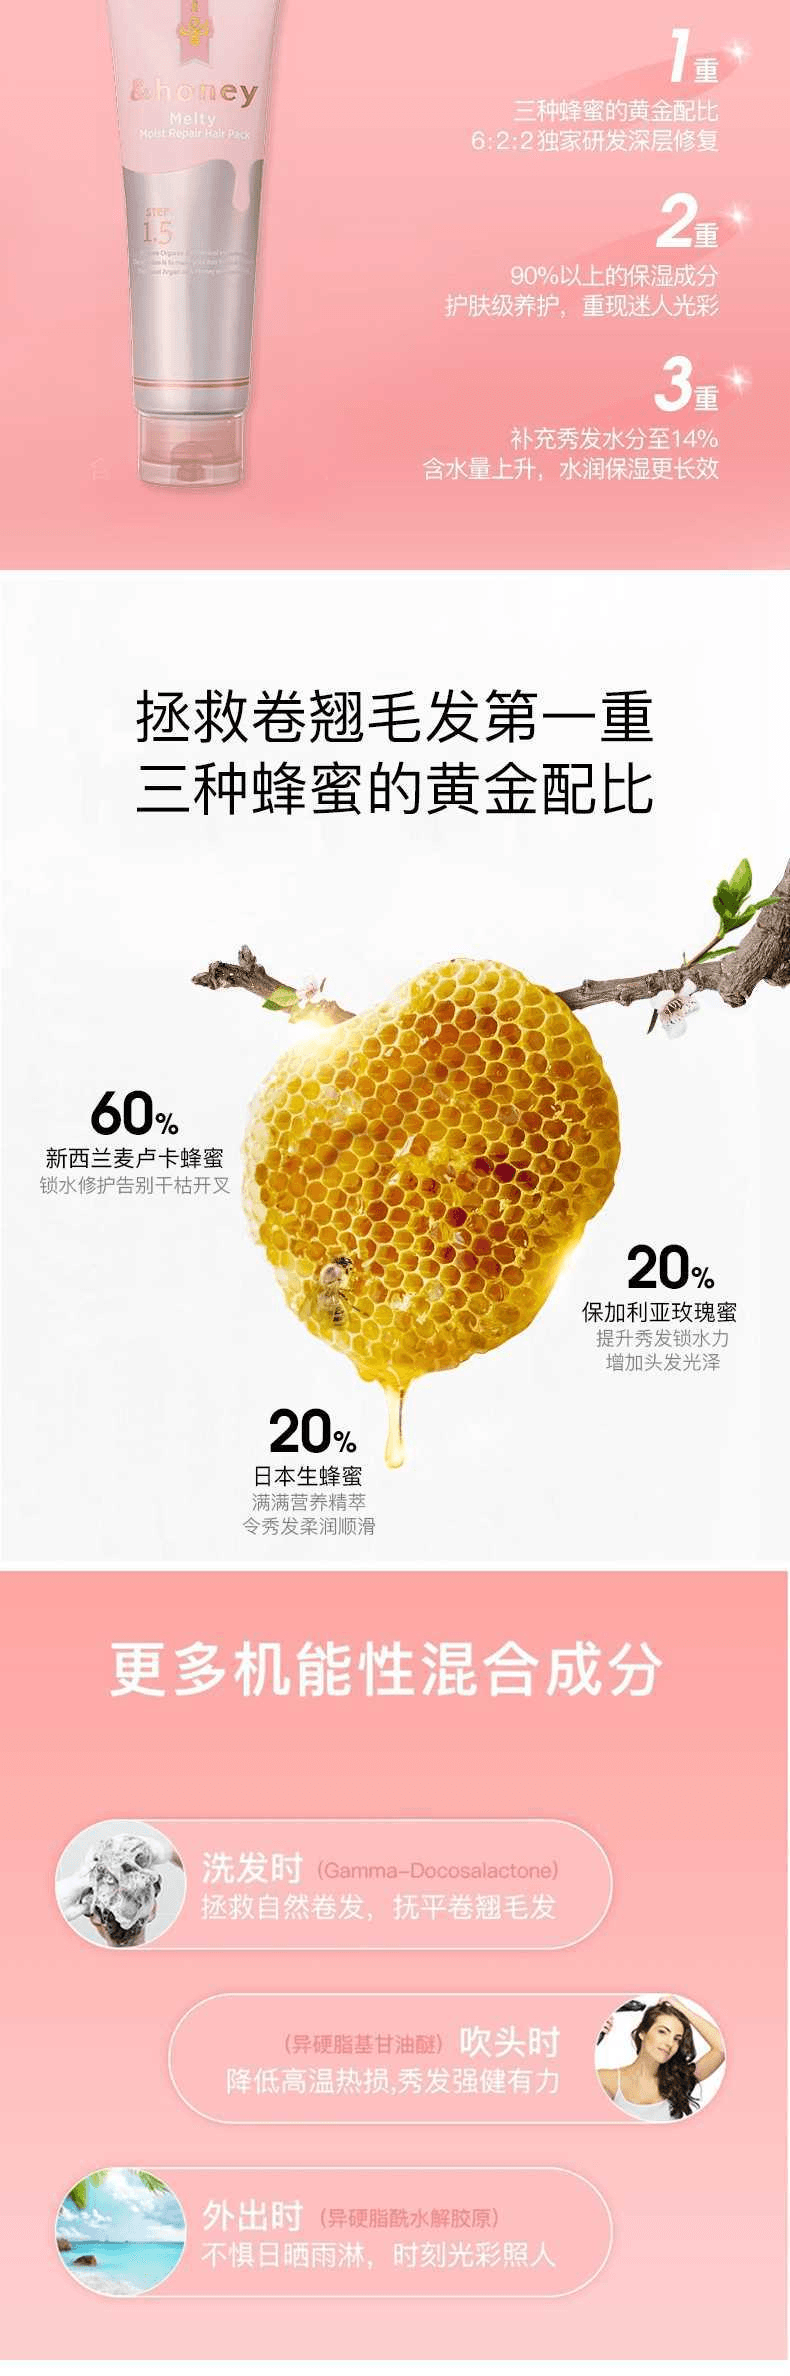 【日本直邮】&Honey安蒂花子 Melty系列 玫瑰蜂蜜保湿护发膏 130g